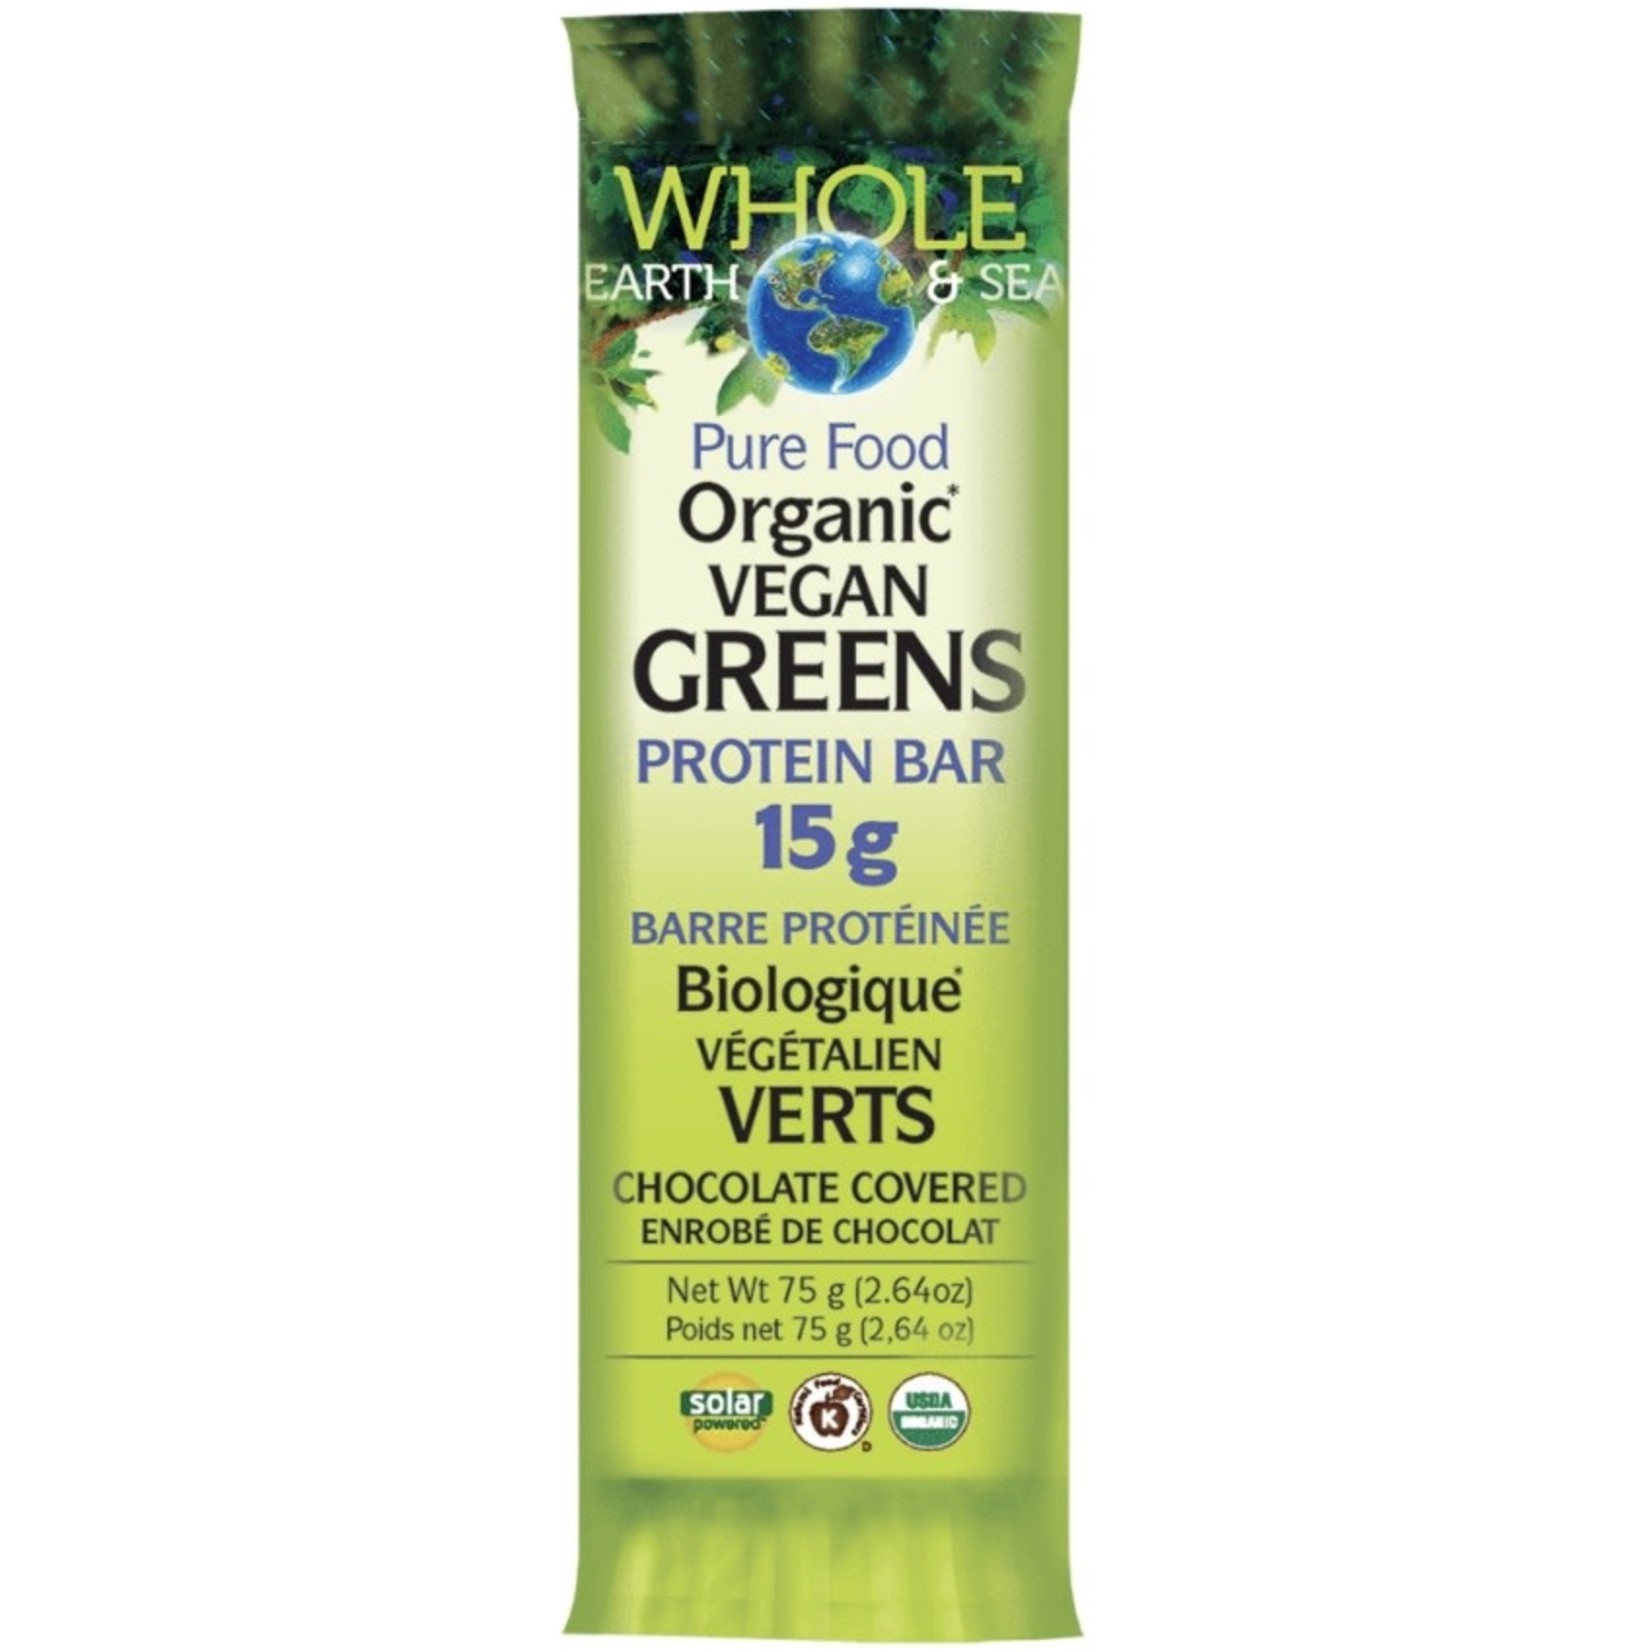 Whole Earth & Sea Whole Earth & Sea Vegan Greens Protein Bar